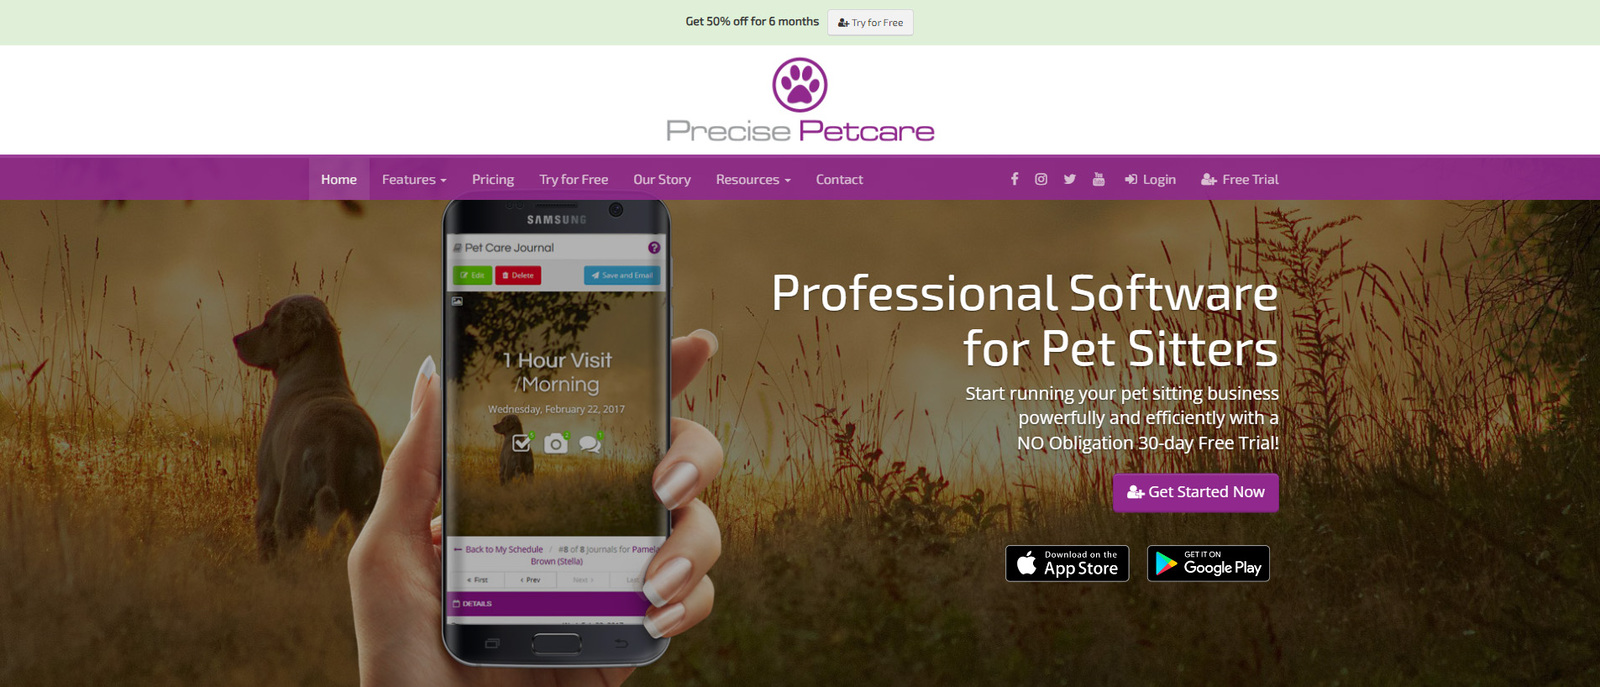 Obraz Precise Petcare, jednej z najlepszych opcji oprogramowania do pielęgnacji zwierząt dla osób wyprowadzających zwierzęta.